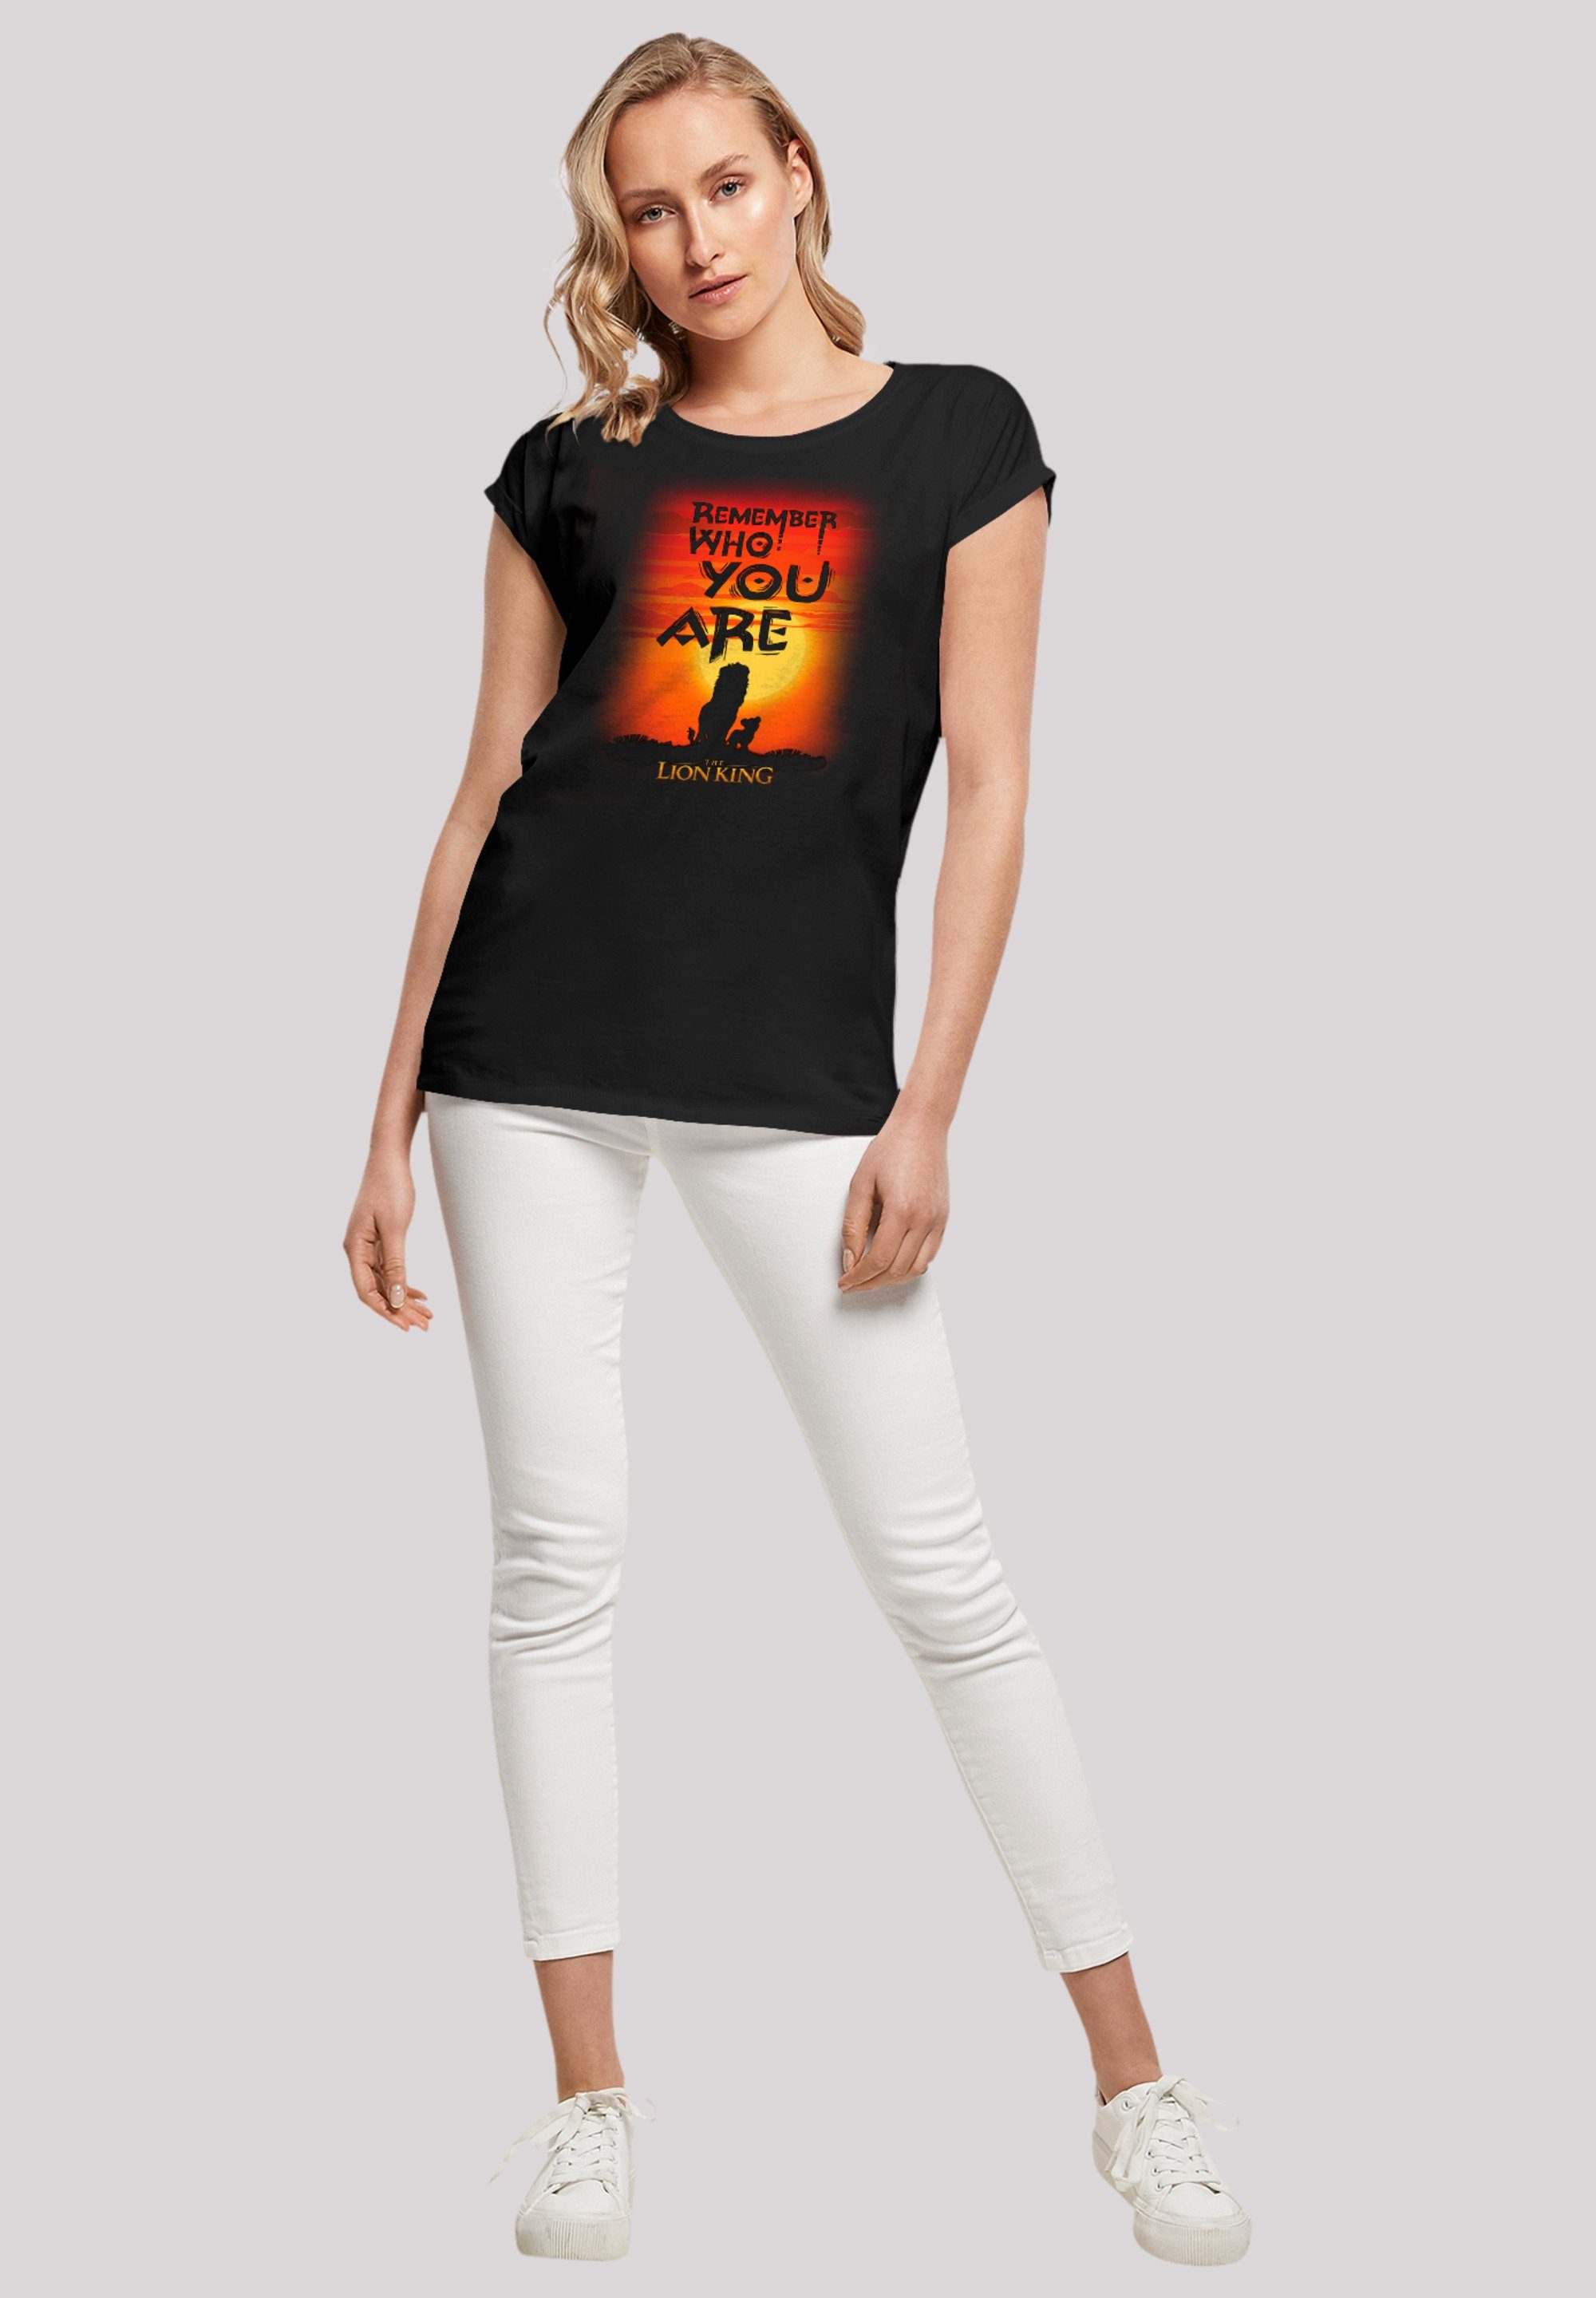 Sundown Löwen König T-Shirt Disney Premium F4NT4STIC Qualität der